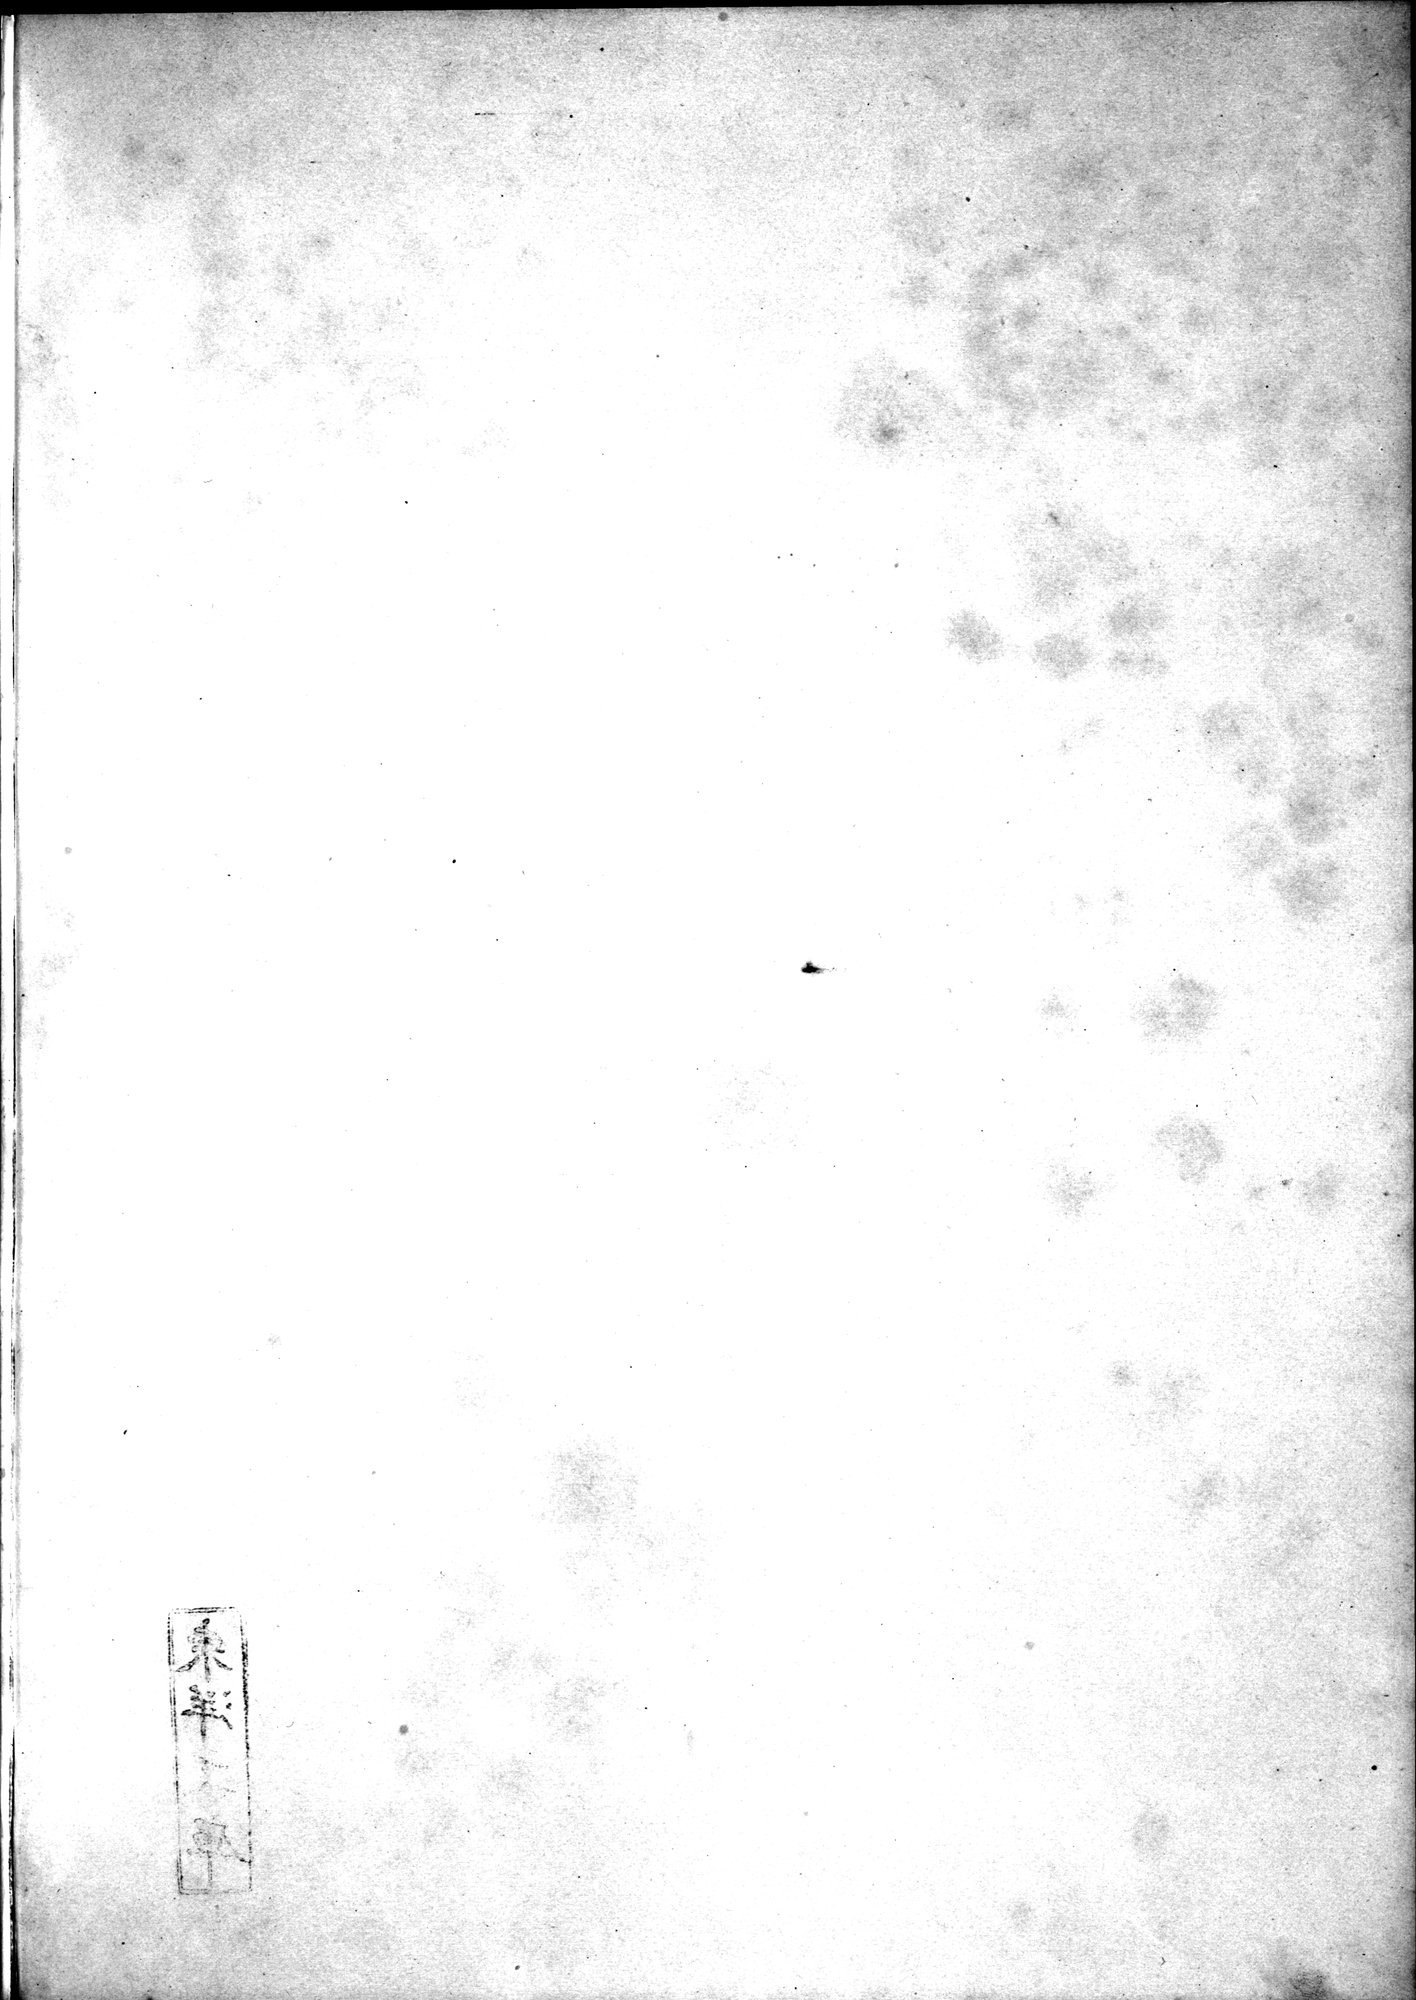 Kunstgeschichte der Seidenweberei : vol.2 / Page 339 (Grayscale High Resolution Image)